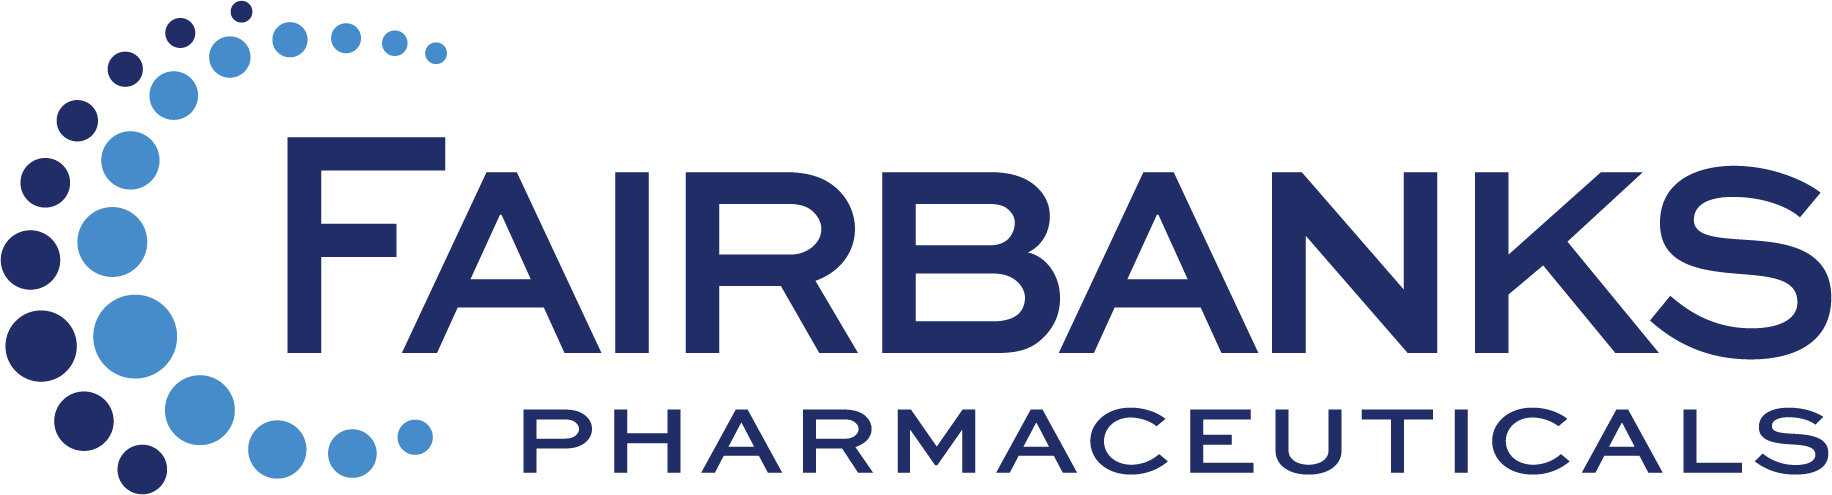 Fairbanks Pharma logo rgb